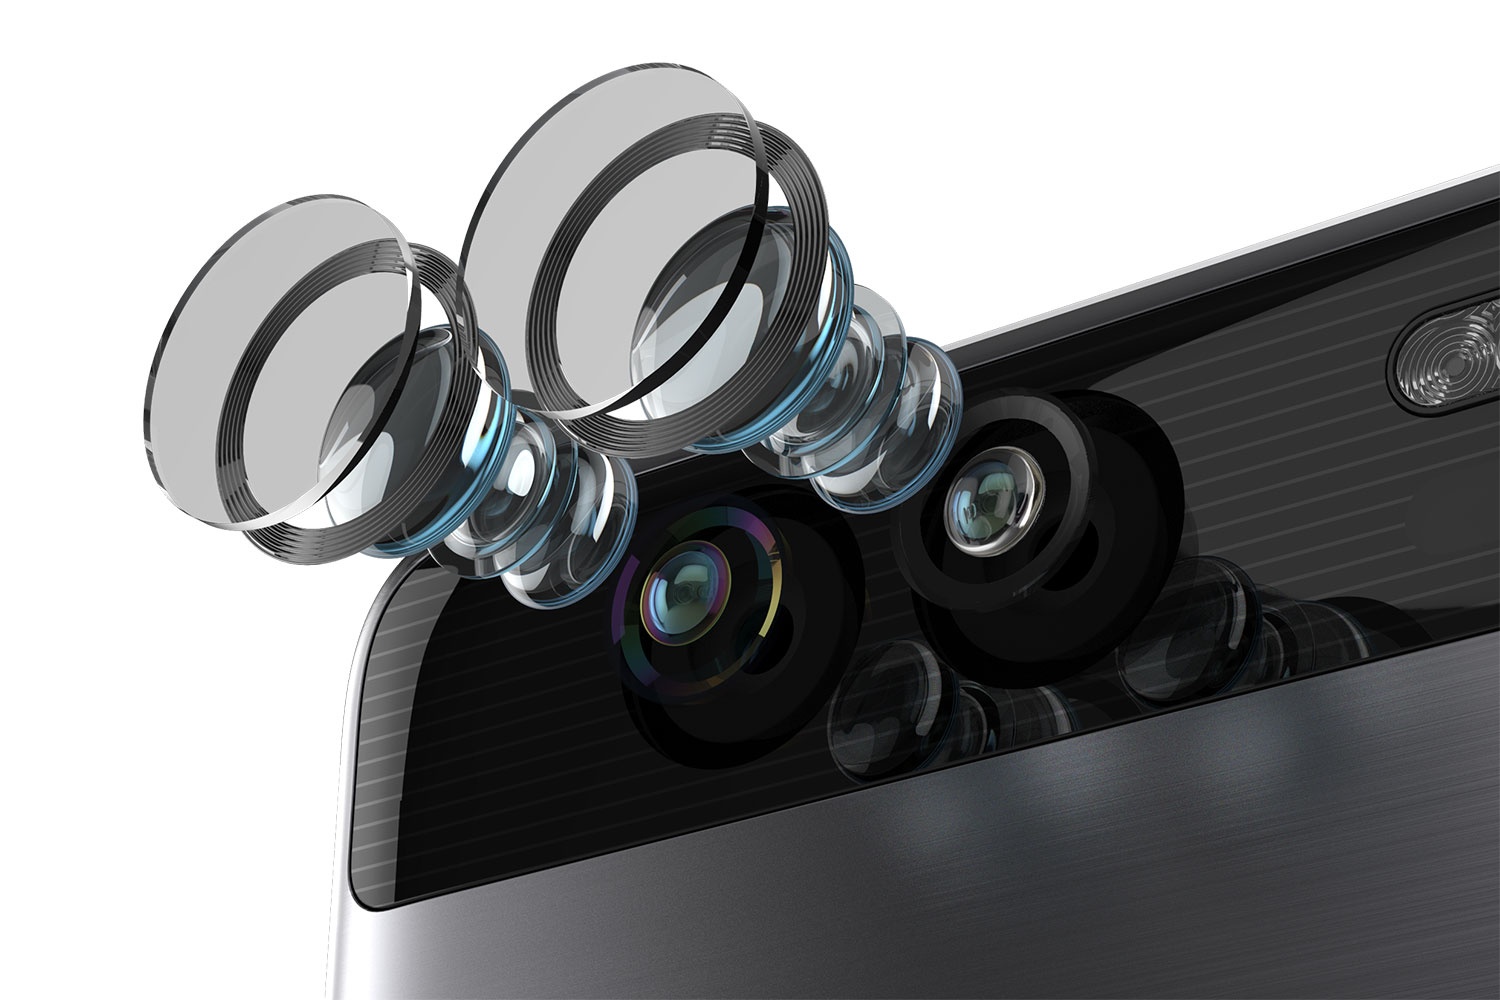 Prezzo Huawei P9 e P9 Plus, caratteristiche tecniche e news doppia fotocamera